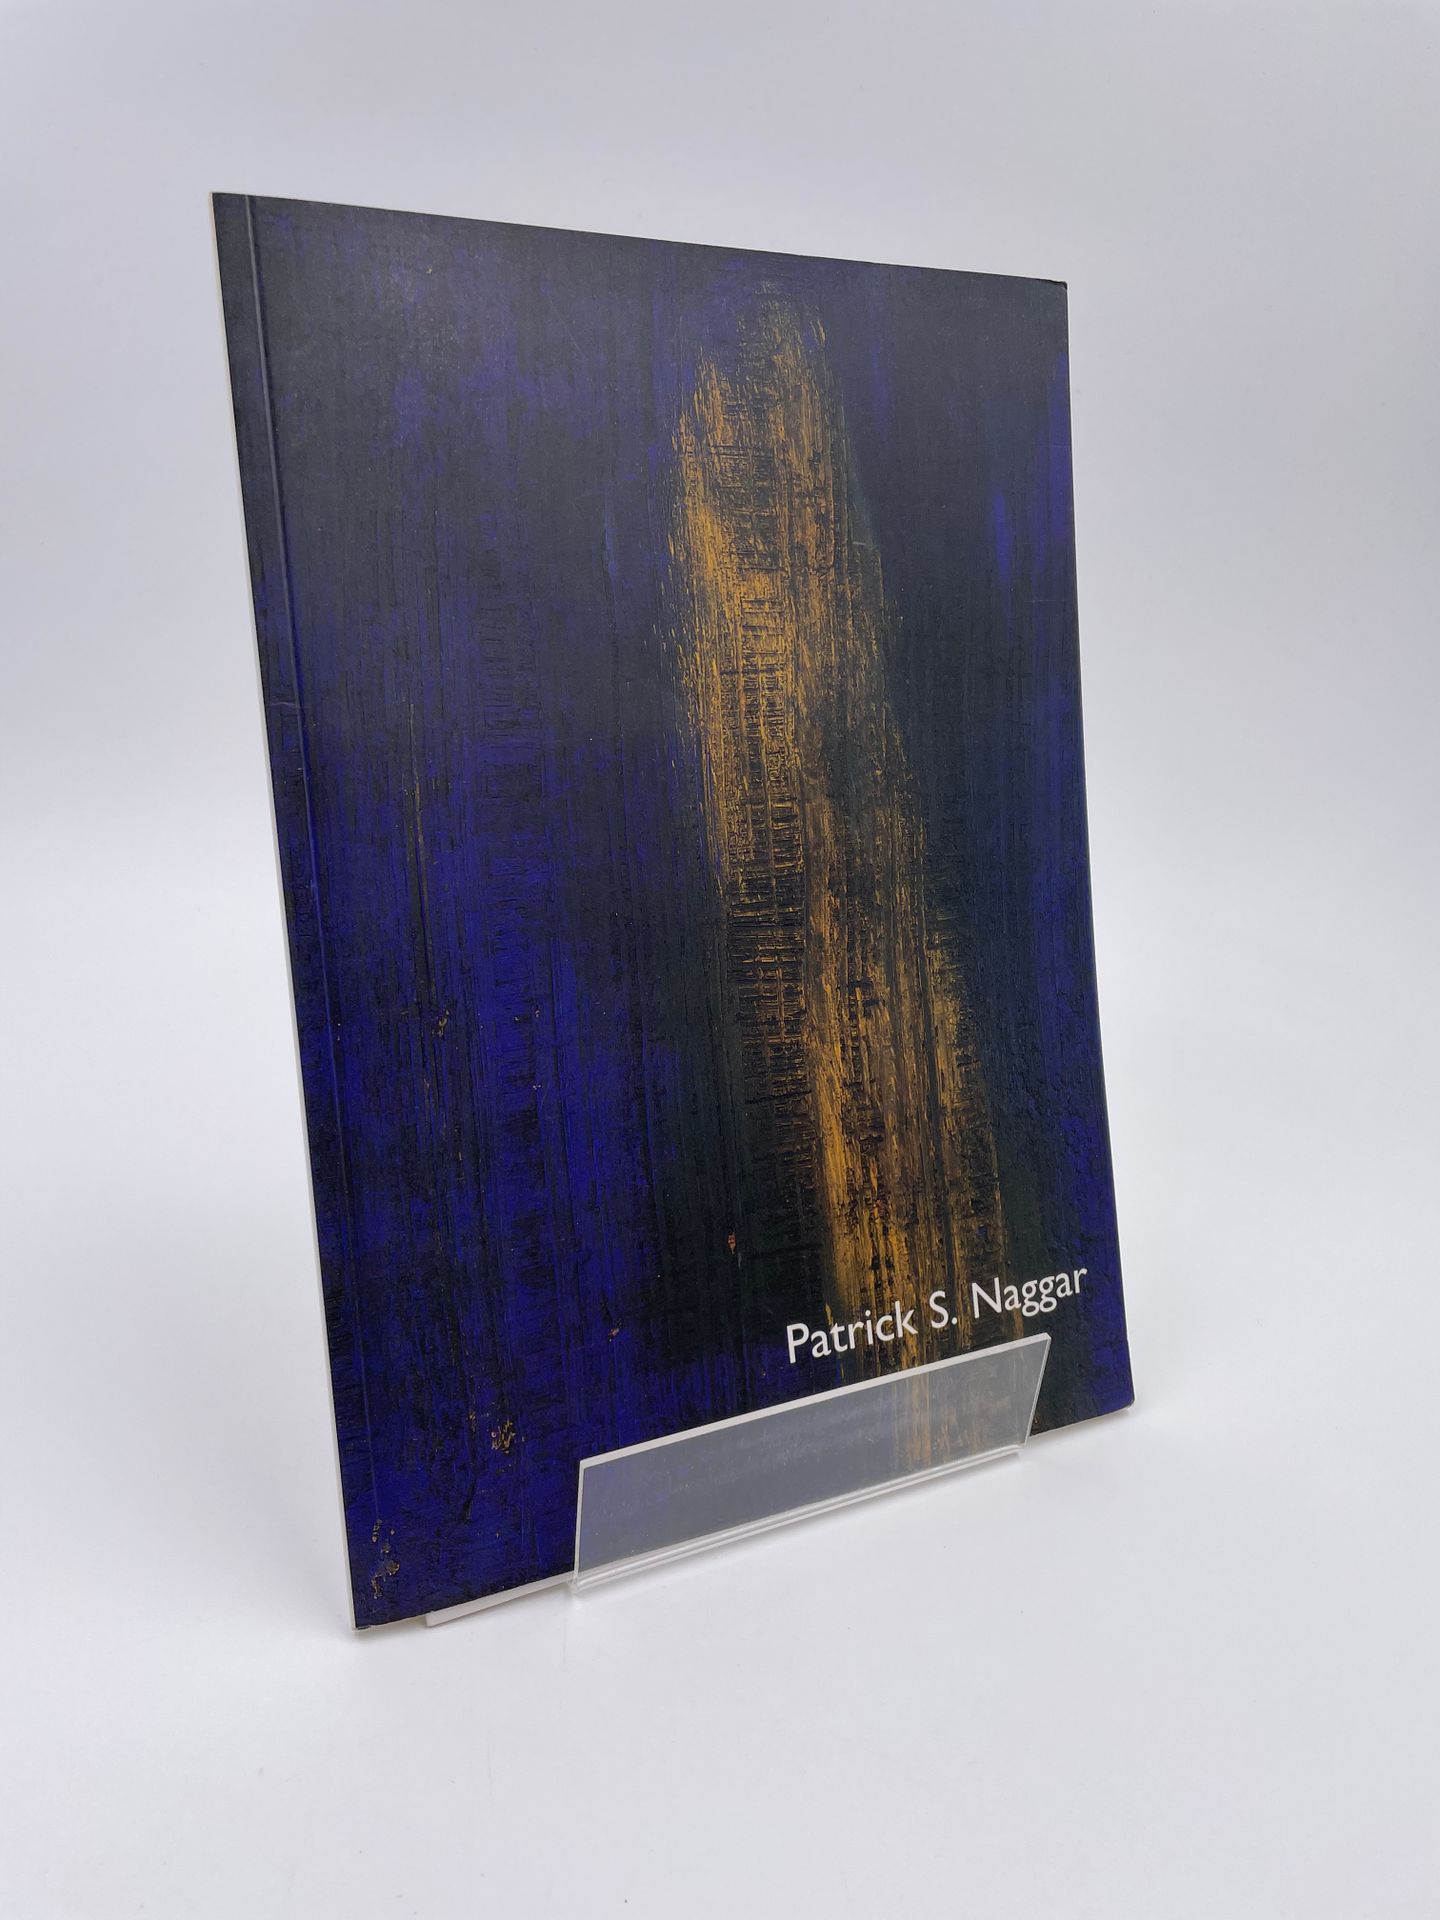 Null 1 volume: "Patrick S. Naggar, Dipinti recenti", Parigi

"CONSEGNATO A 17 RU&hellip;